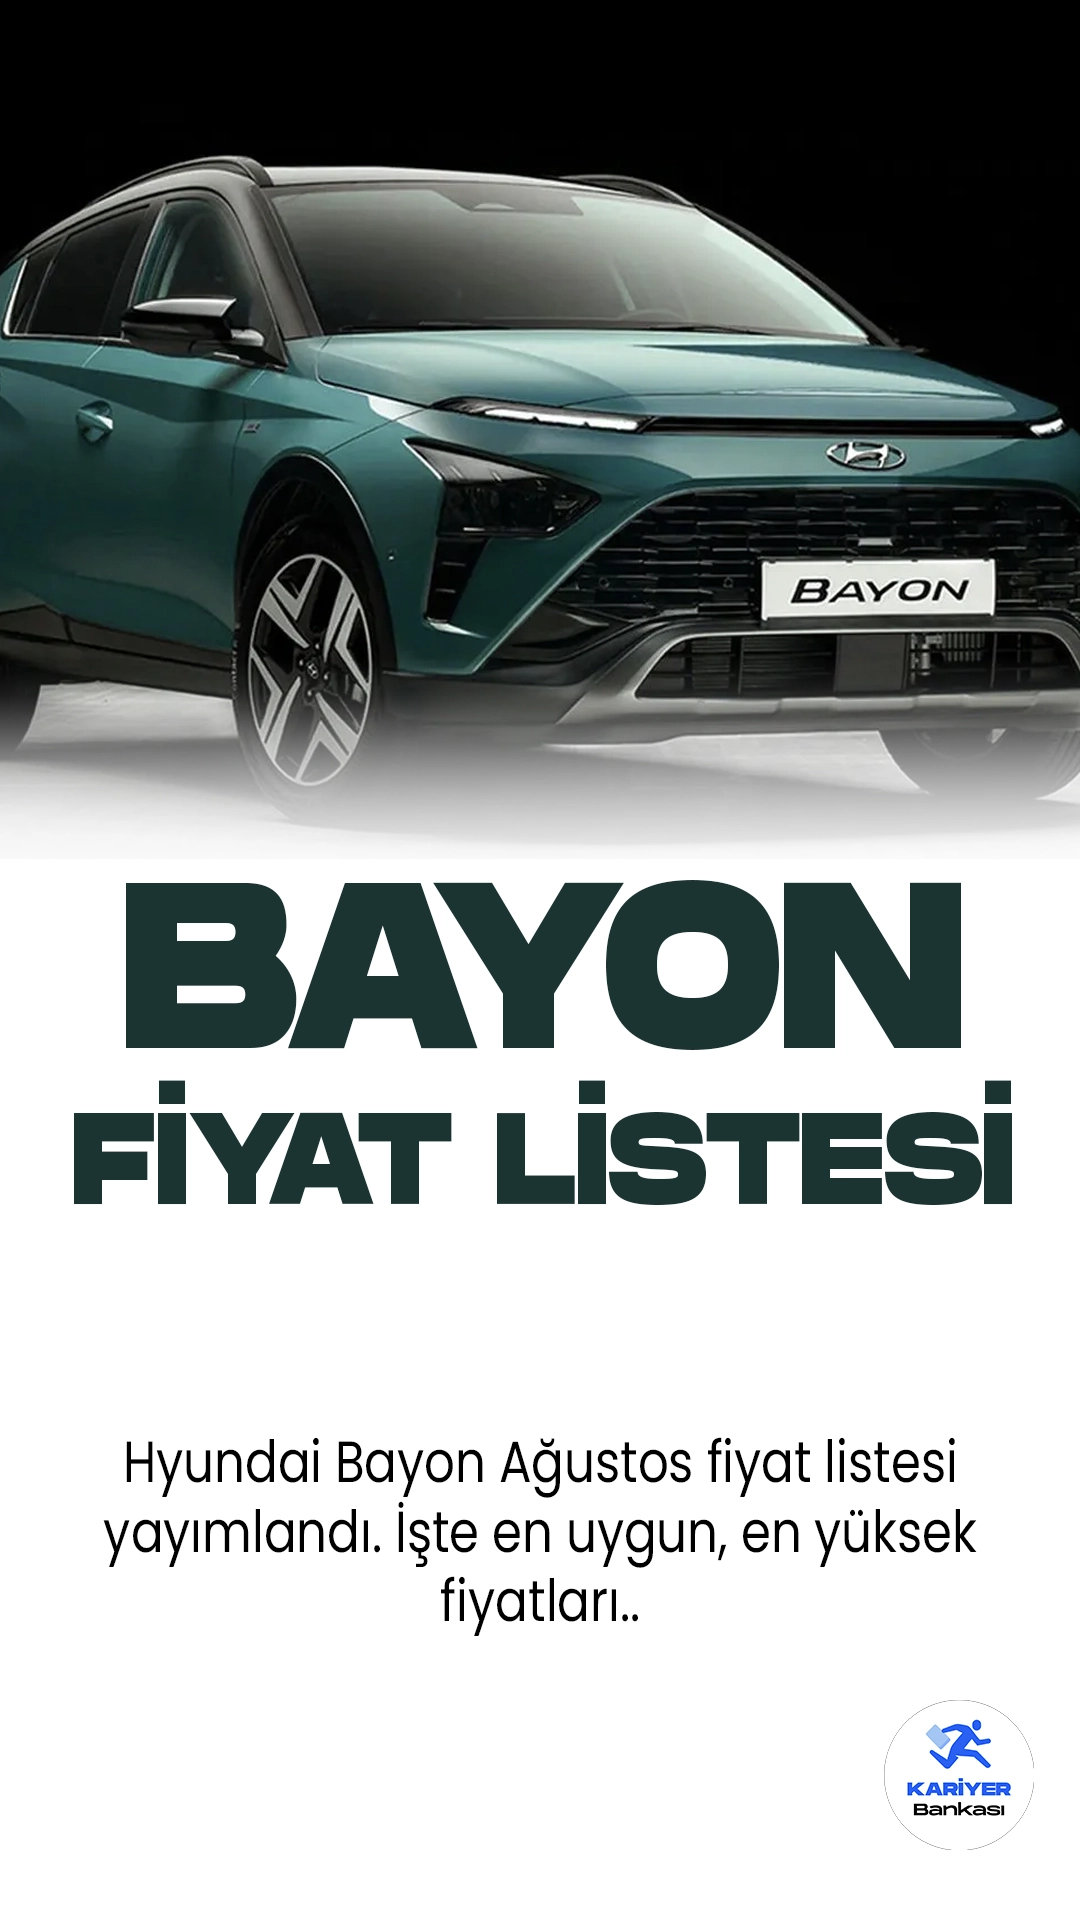 Hyundai Bayon Ağustos 2023 Fiyat Listesi Yayımlandı.Yeni Hyundai Bayon, şık tasarımı ve üstün özellikleriyle otomobil tutkunlarının beğenisine sunuldu. Bayon, kompakt crossover segmentinde mükemmel bir seçenek olarak öne çıkıyor. Benzersiz LED farları ve kaslı ön ızgarası ile dikkat çeken model, şehir içi manevralarda da kolaylık sağlıyor. Ferah iç mekanı, kullanıcı dostu teknolojileri ve güvenlik sistemleriyle sürüş keyfini en üst seviyeye çıkarıyor. Bayon'un güçlü motor seçenekleri, yakıt verimliliği ve çevreci özellikleri, çevre bilincine sahip sürücülerin tercihi olacak. Hyundai Bayon, yüksek performansı, estetik tasarımı ve üstün teknolojisiyle otomobil severleri büyülemeye devam ediyor.